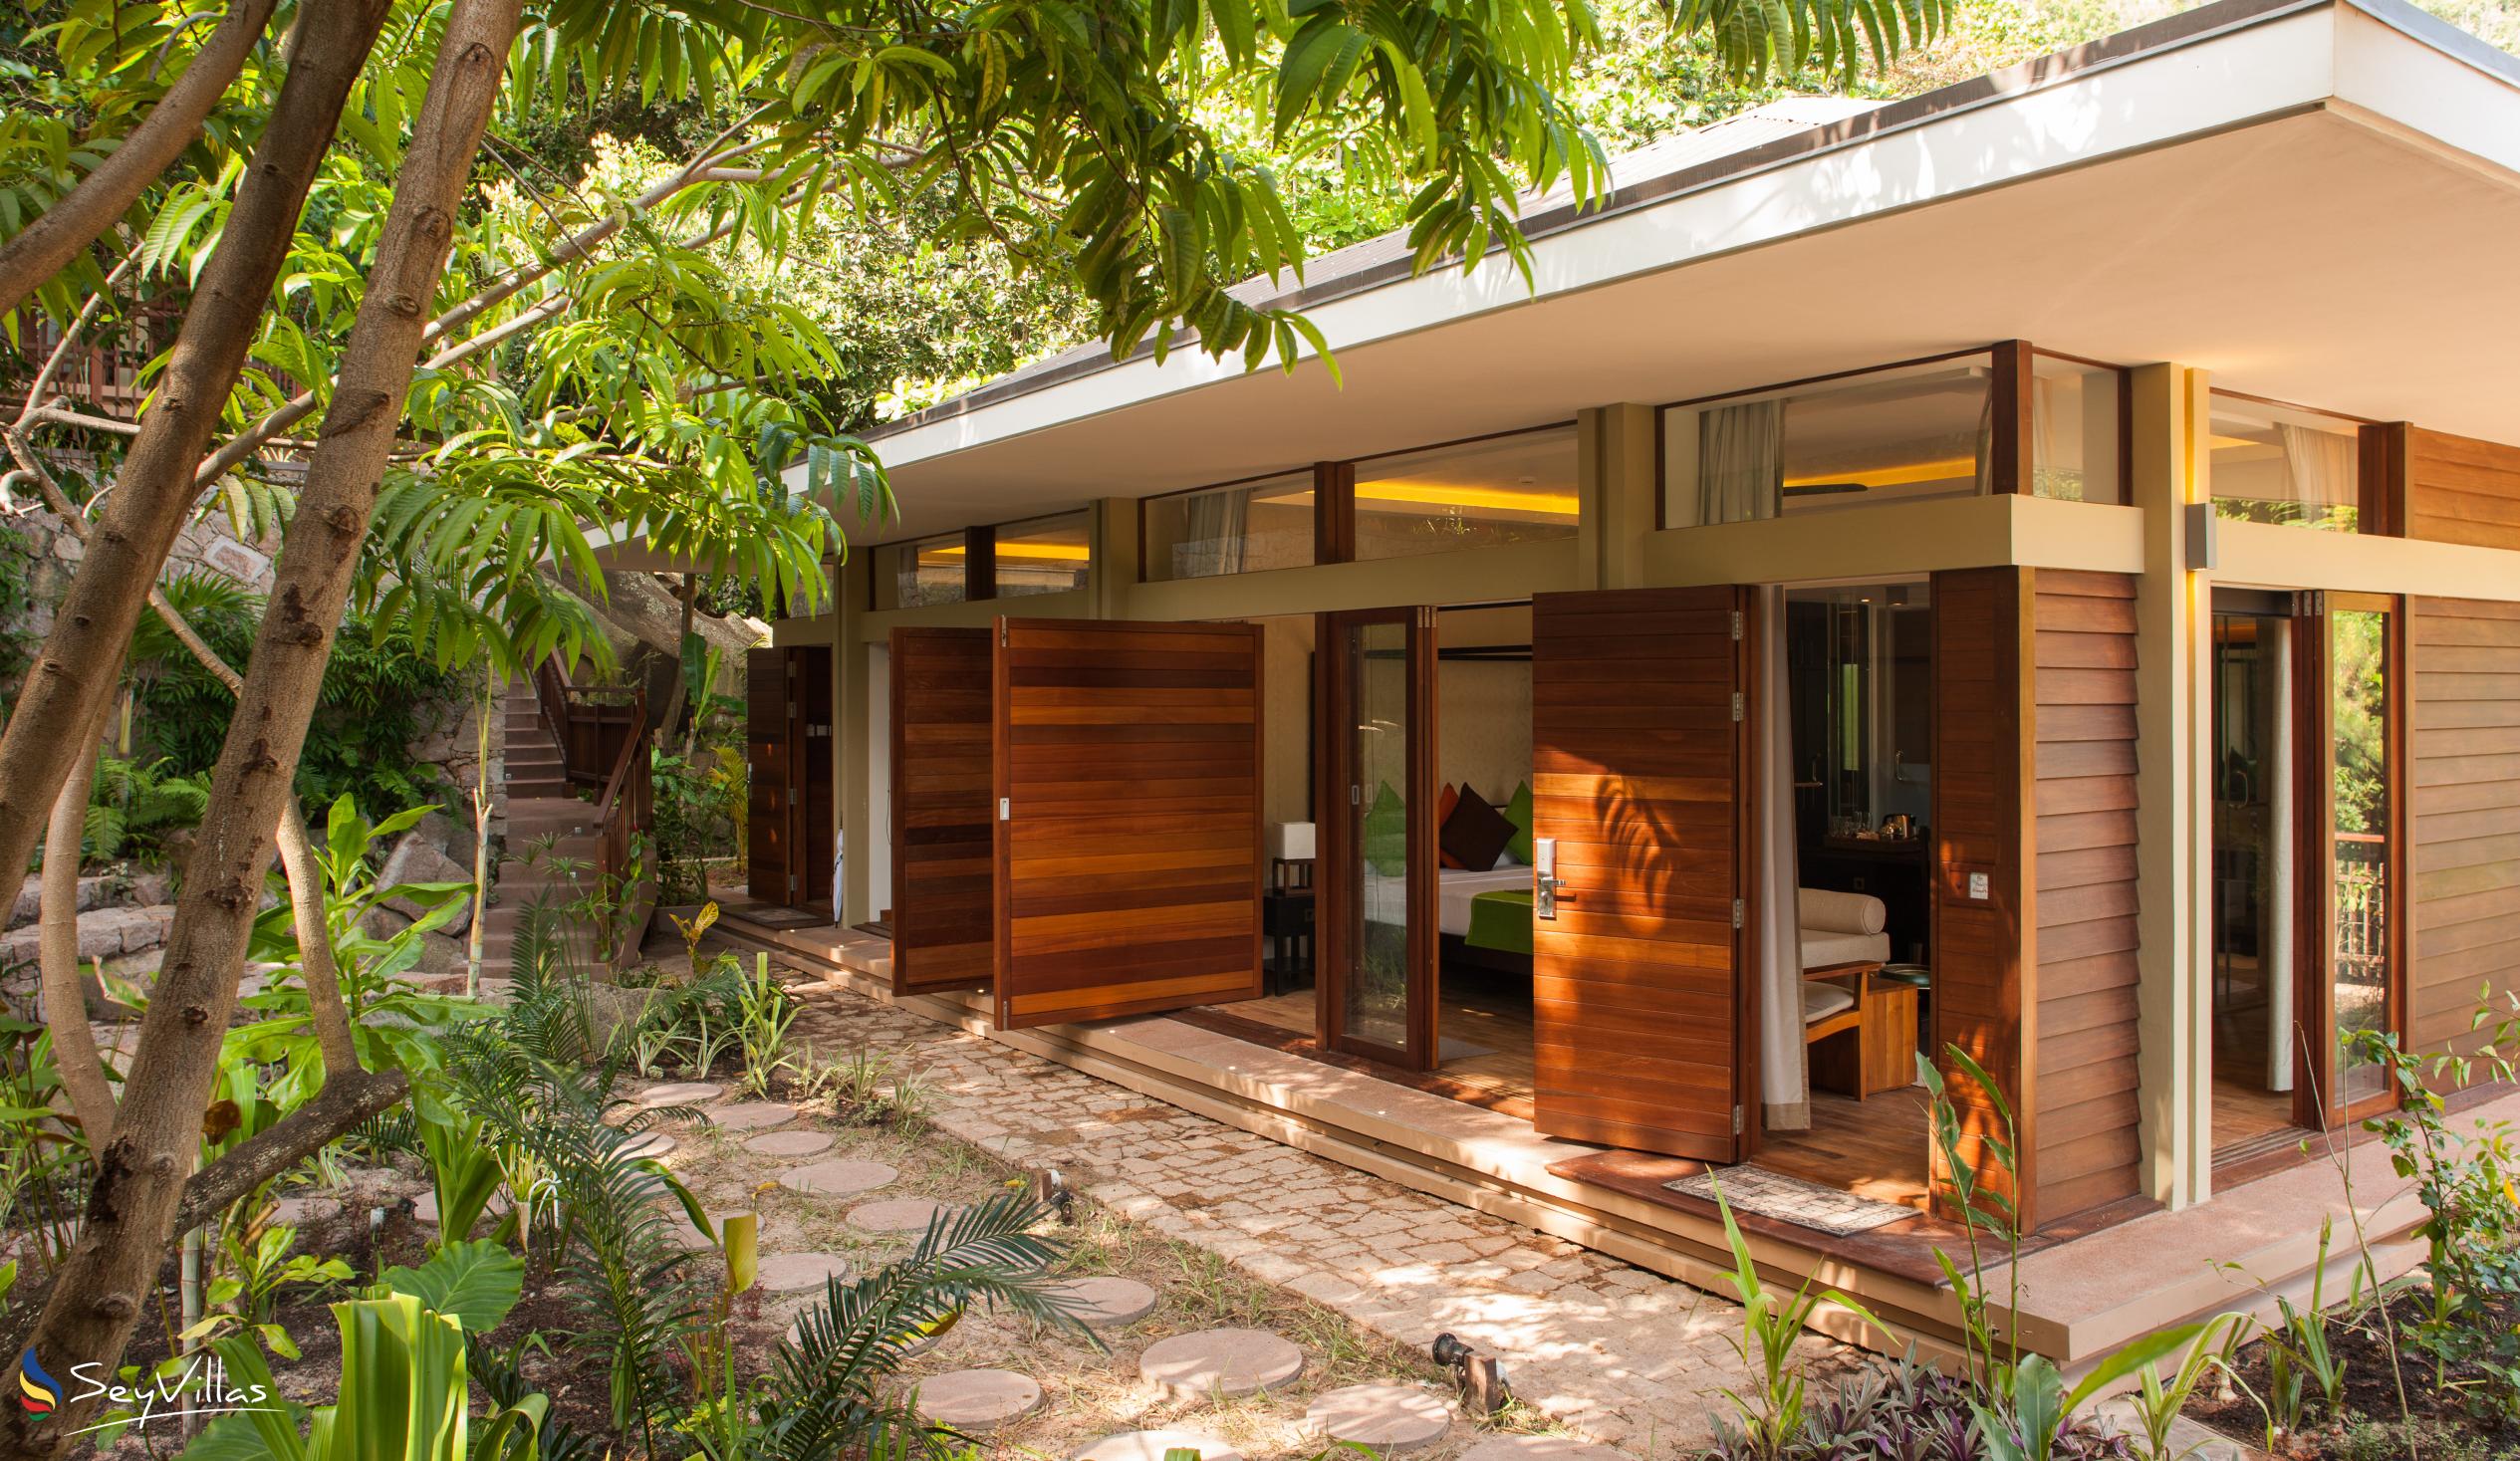 Foto 22: Le Relax Luxury Lodge - Aussenbereich - La Digue (Seychellen)